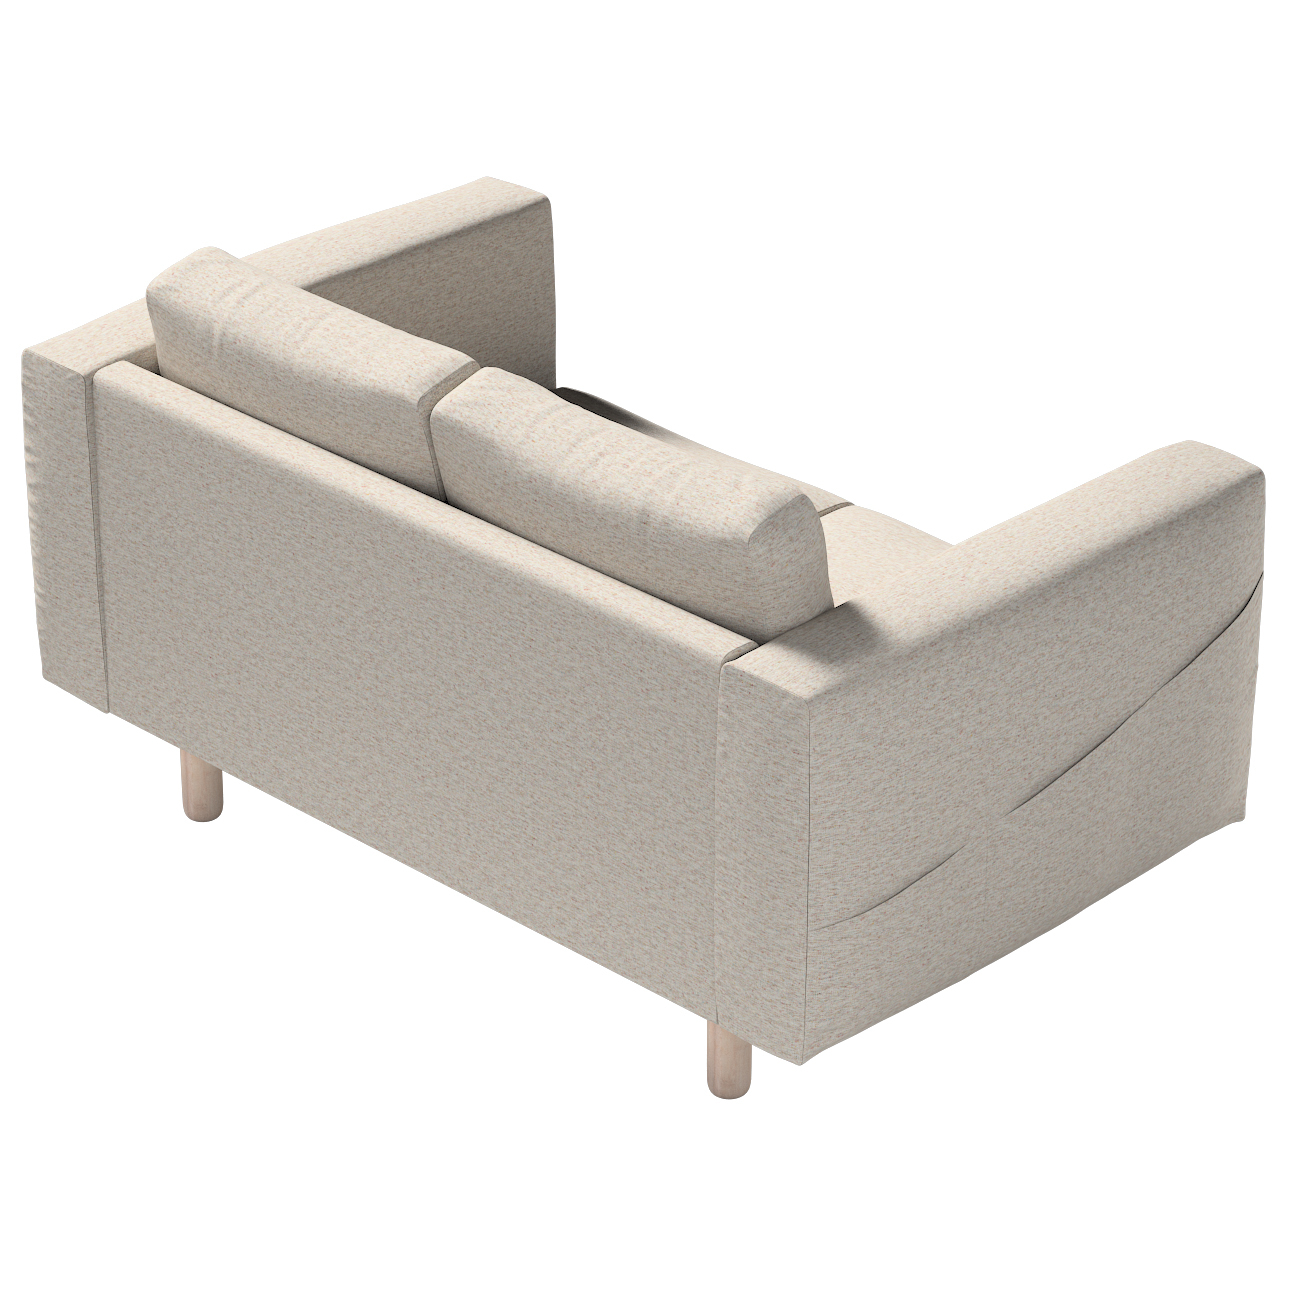 Bezug für Norsborg 2-Sitzer Sofa, grau-beige, Norsborg 2-Sitzer Sofabezug, günstig online kaufen